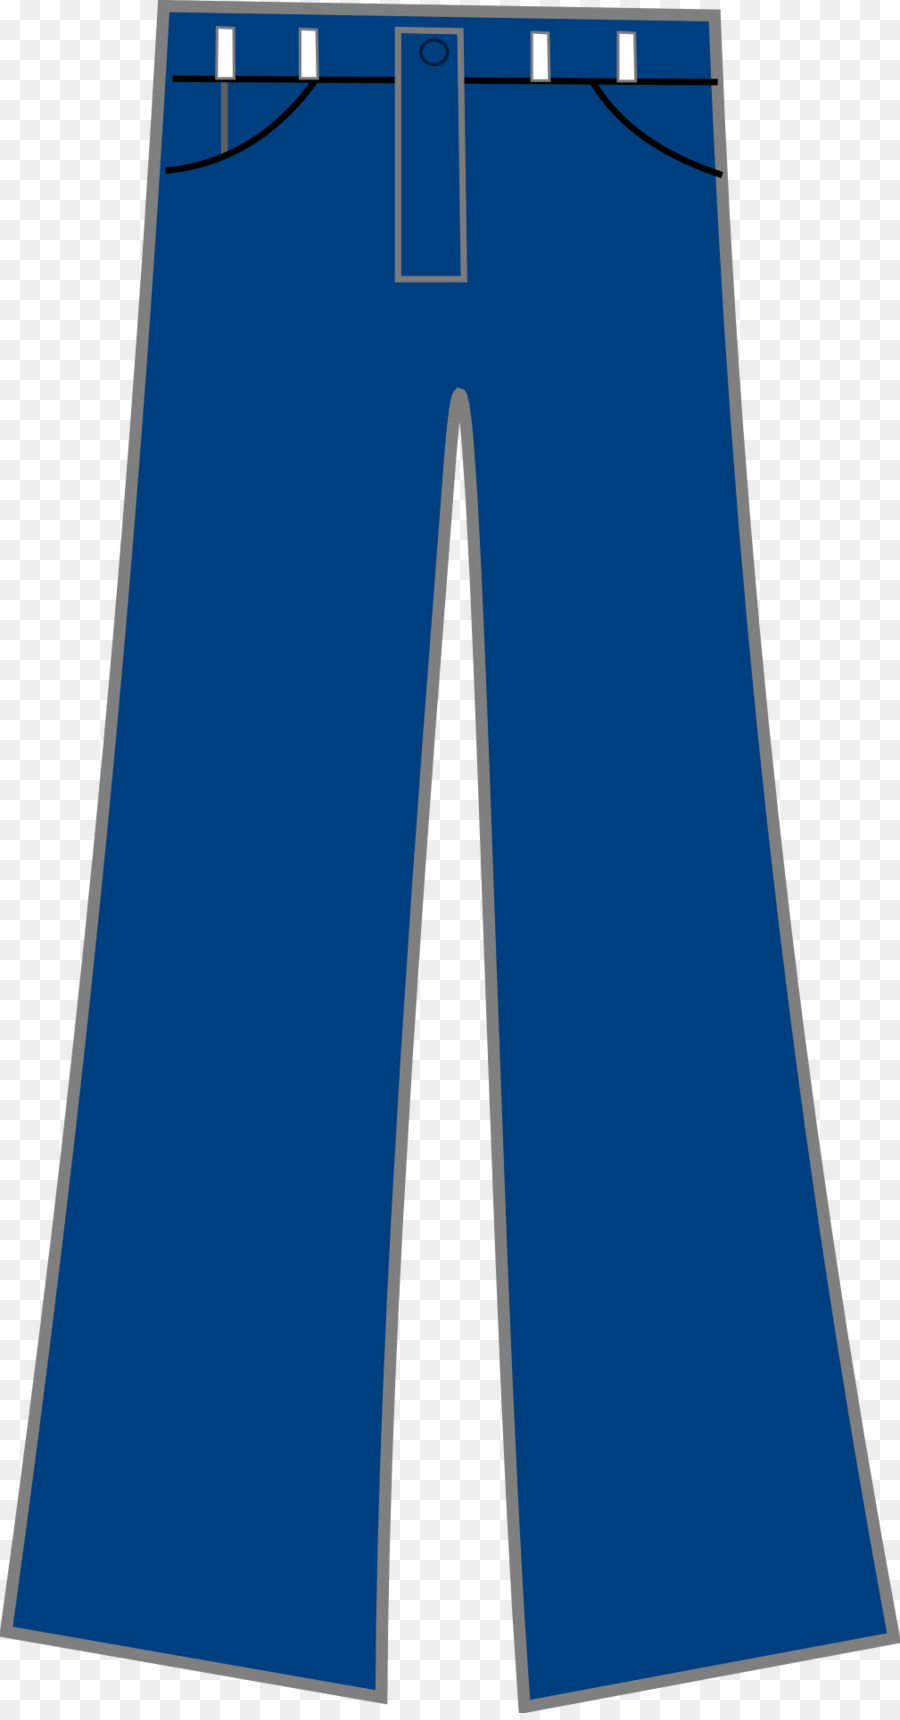 Pants clipart cartoon. Jeans clothing blue transparent